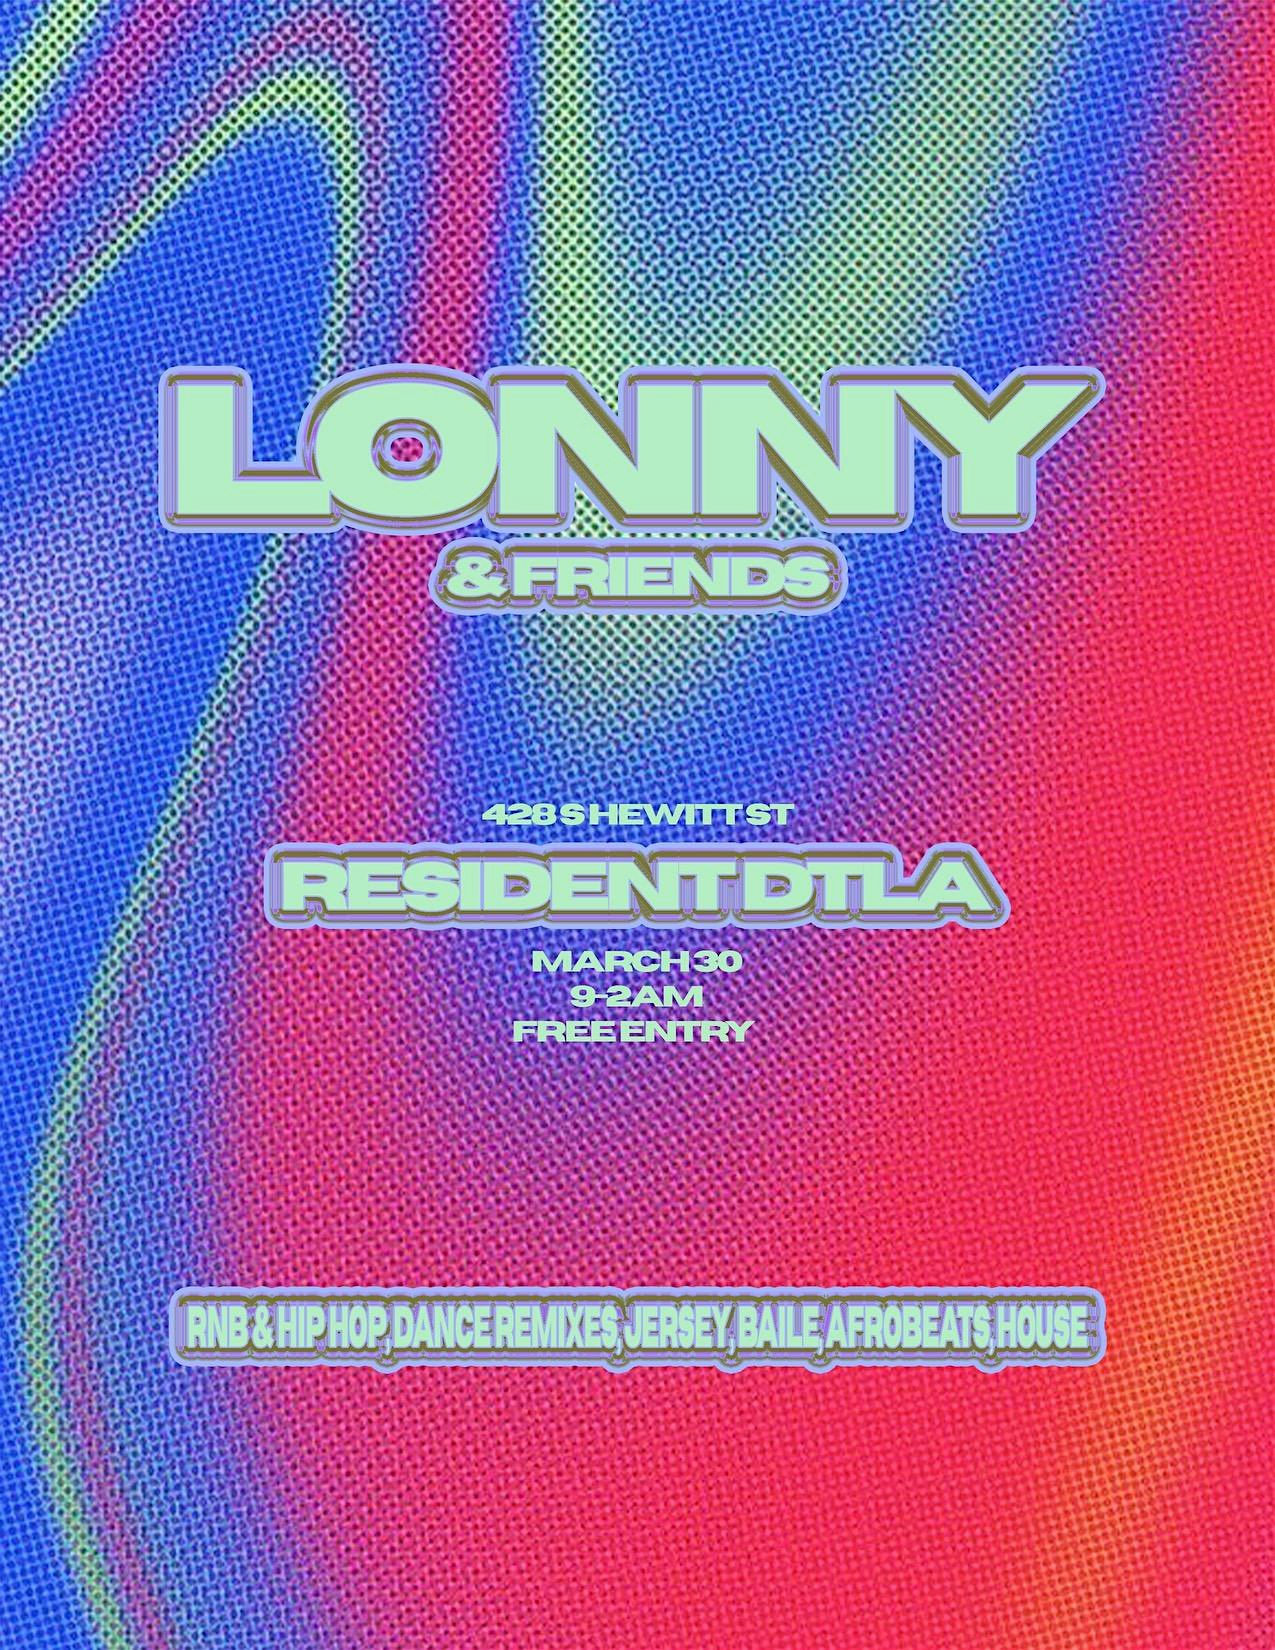 Lonny & Friends